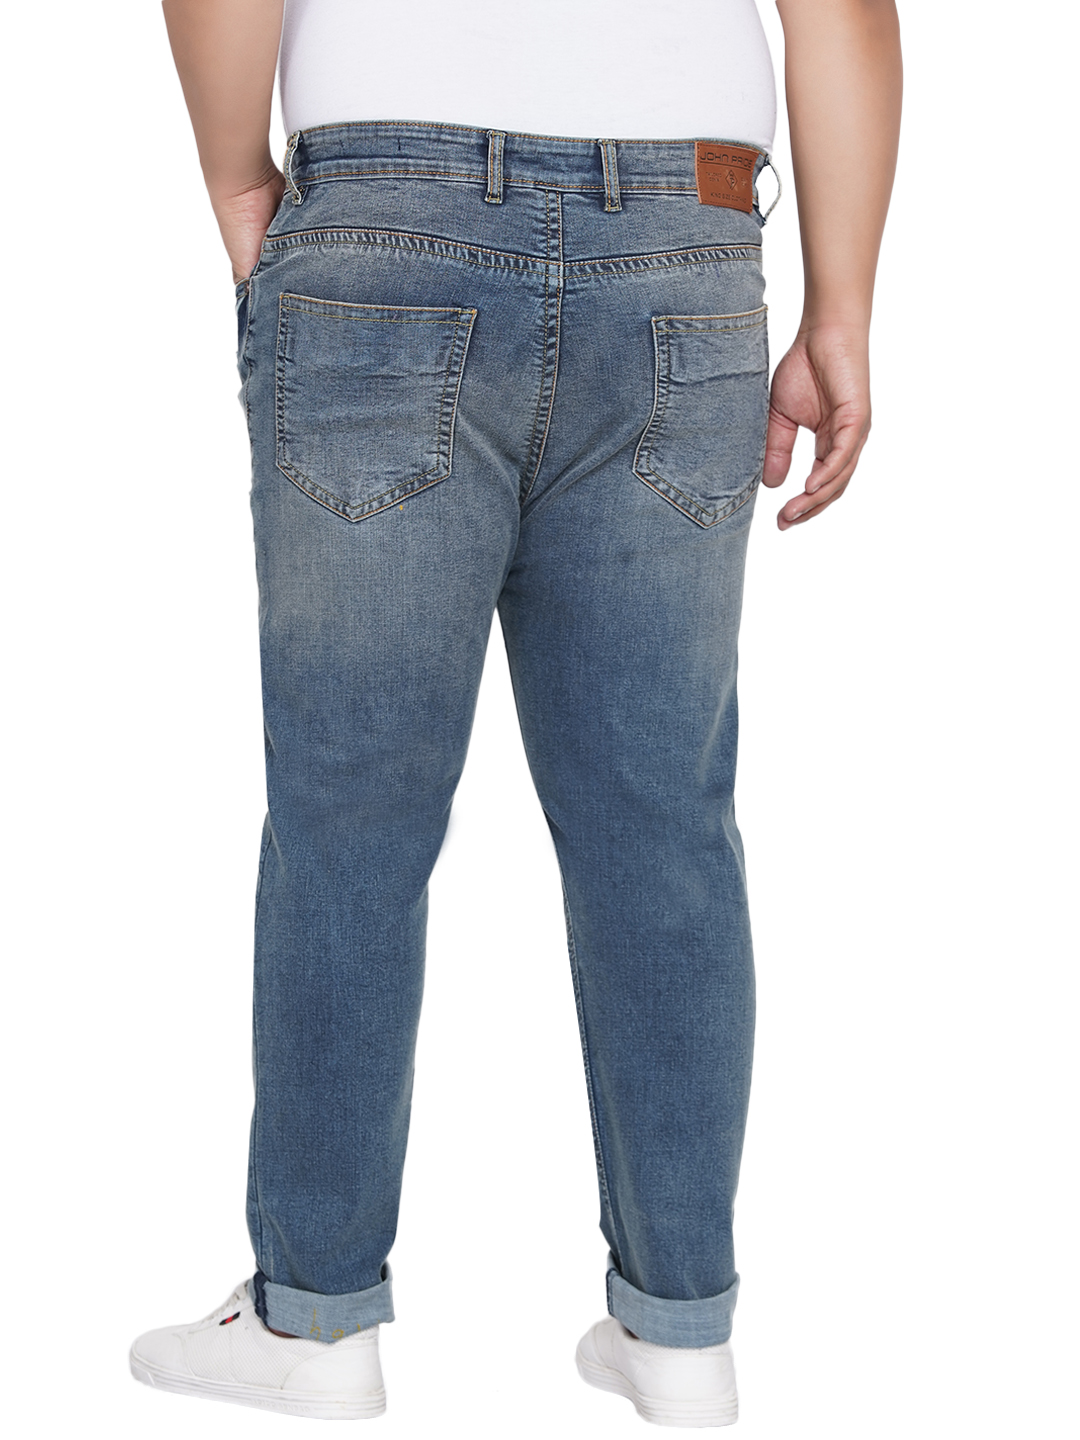 bottomwear/jeans/JPJ12201/jpj12201-5.jpg